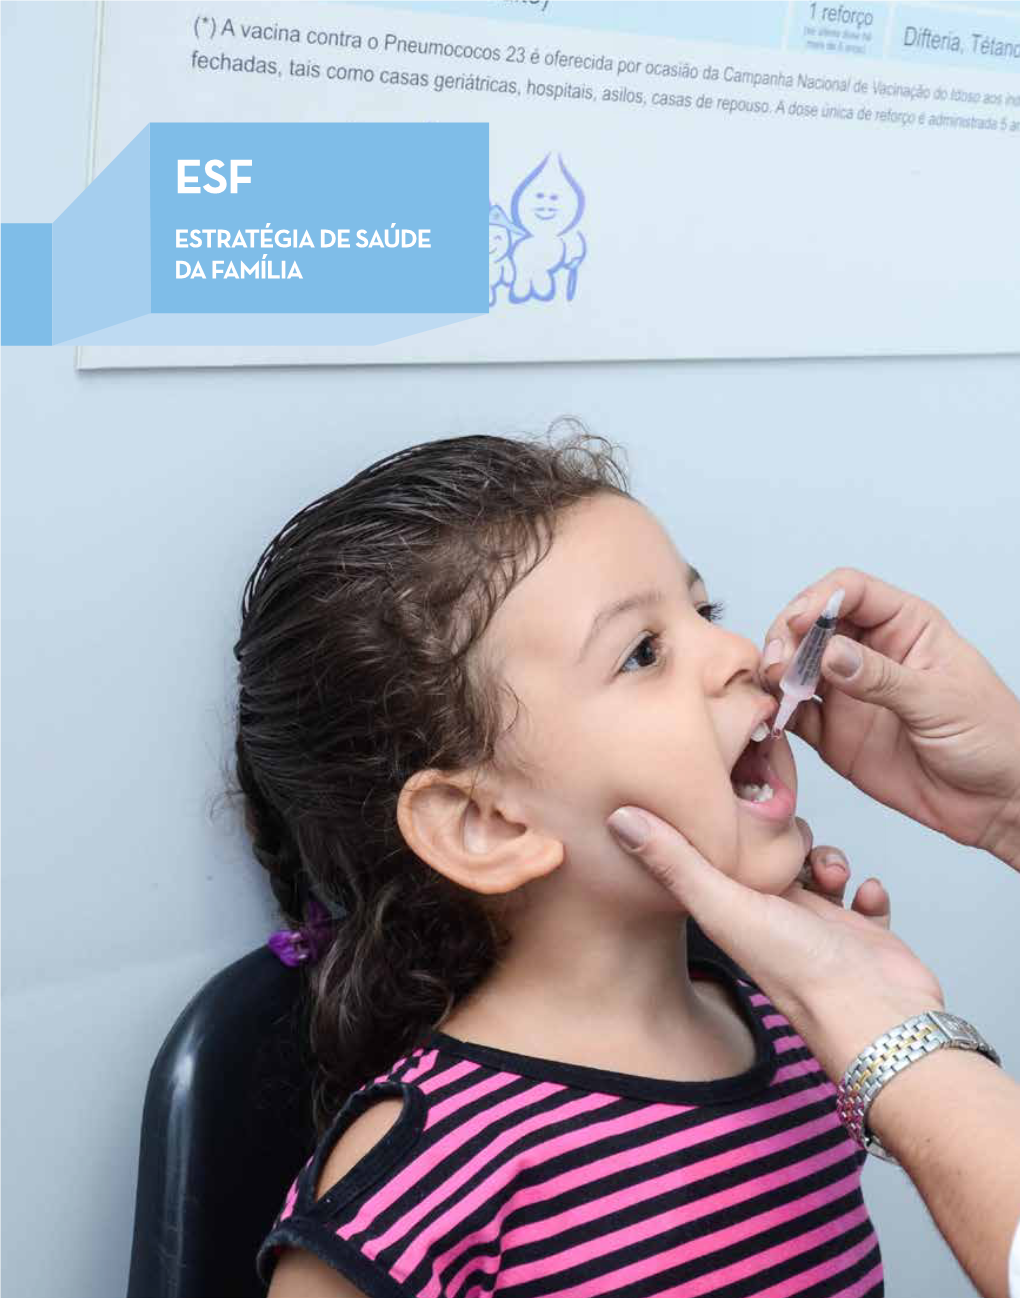 ESF – Estratégia De Saúde Da Família